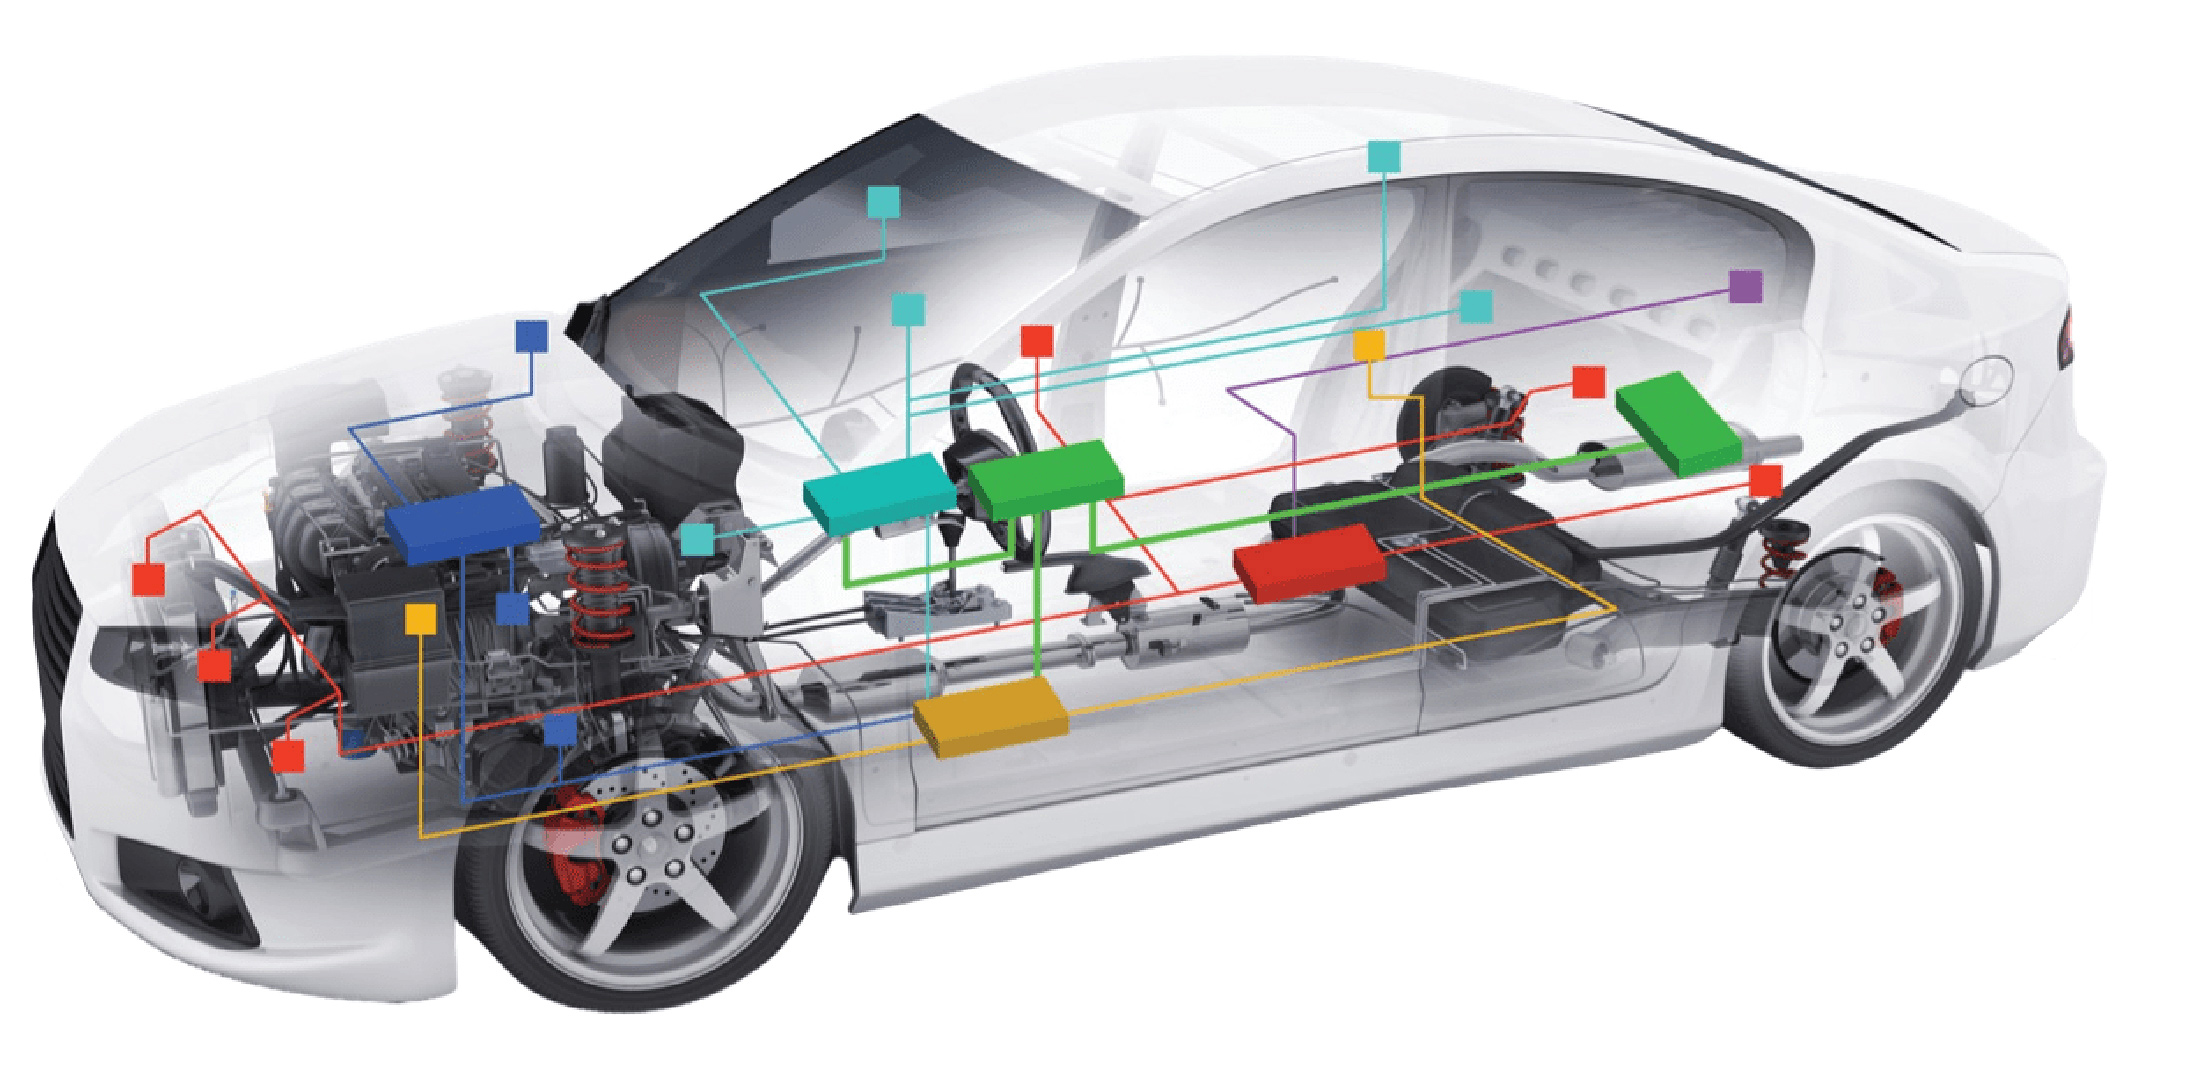 Bosch Relaunches Passenger Vehicle Battery Program